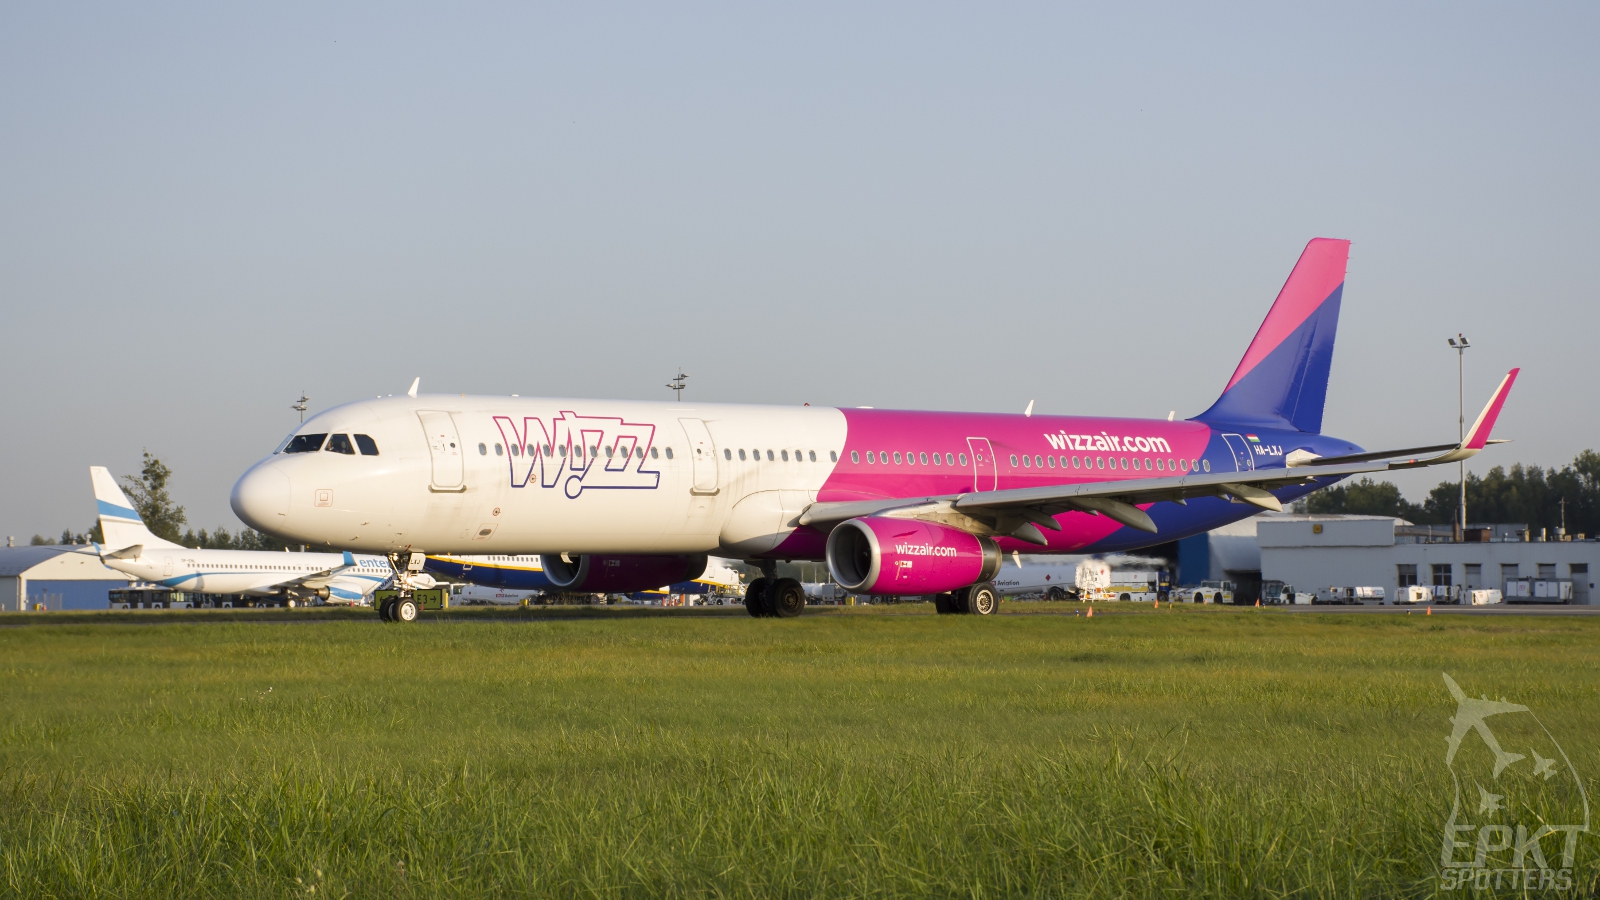 HA-LXJ - Airbus A321 -231(WL) (Wizz Air) / Pyrzowice - Katowice Poland [EPKT/KTW]